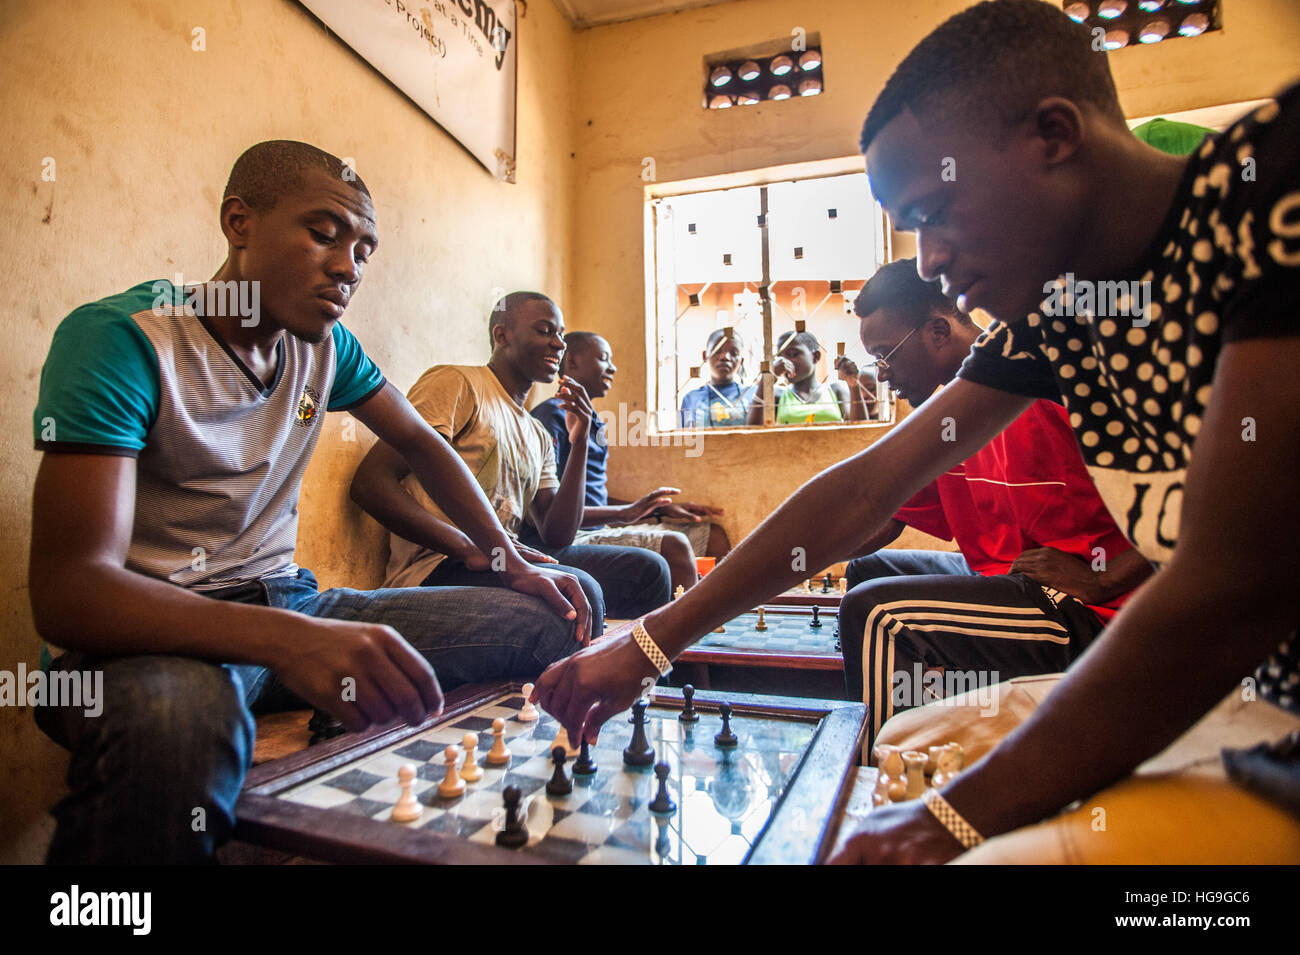 Les enfants jouent aux échecs dans Katwe slum, Kampala, Ouganda Banque D'Images